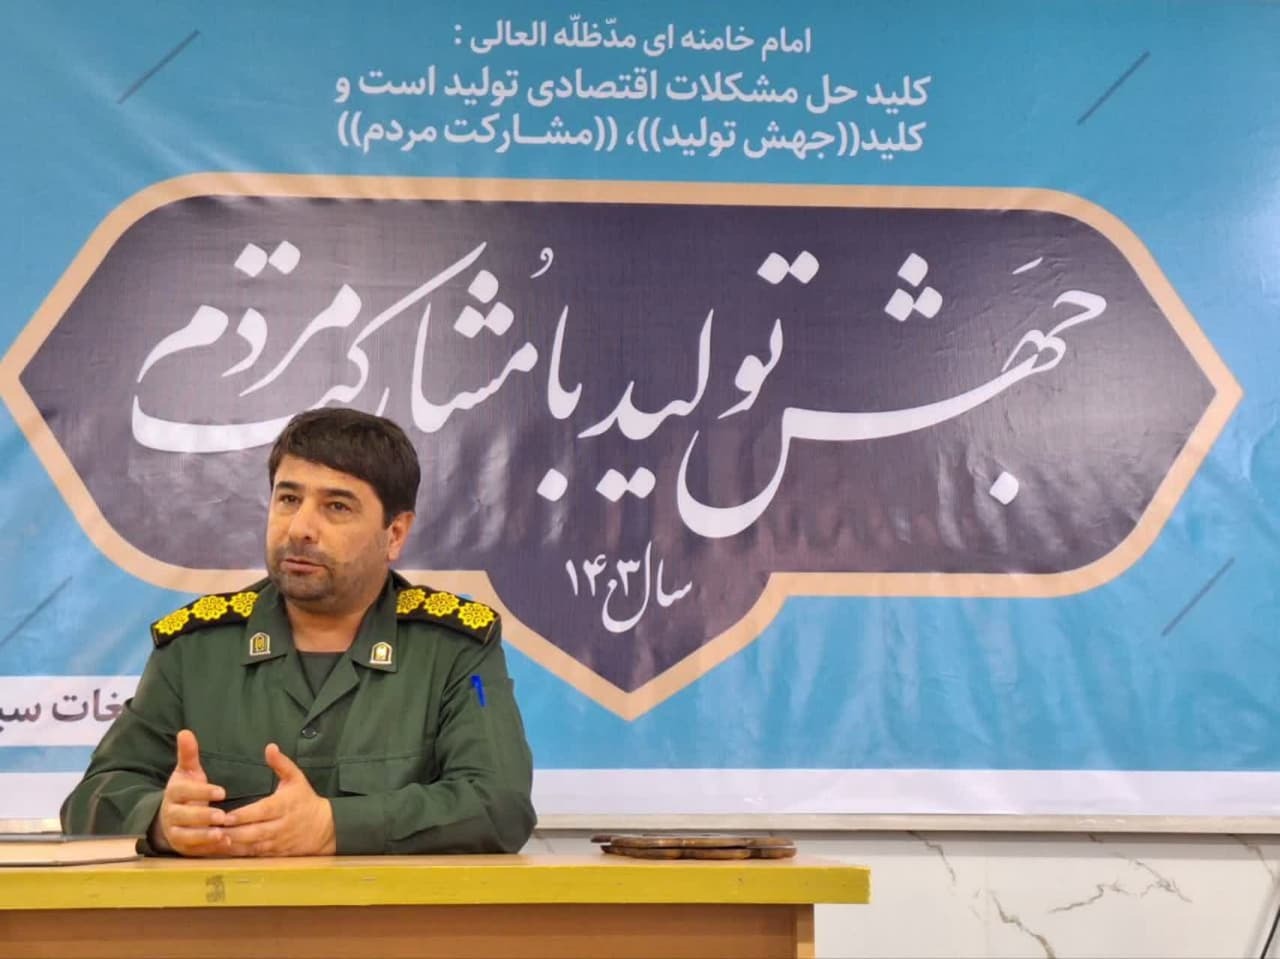 دشمن در عملیات وعده صادق به قدرت و عظمت ایران اسلامی بیشتر پی برد